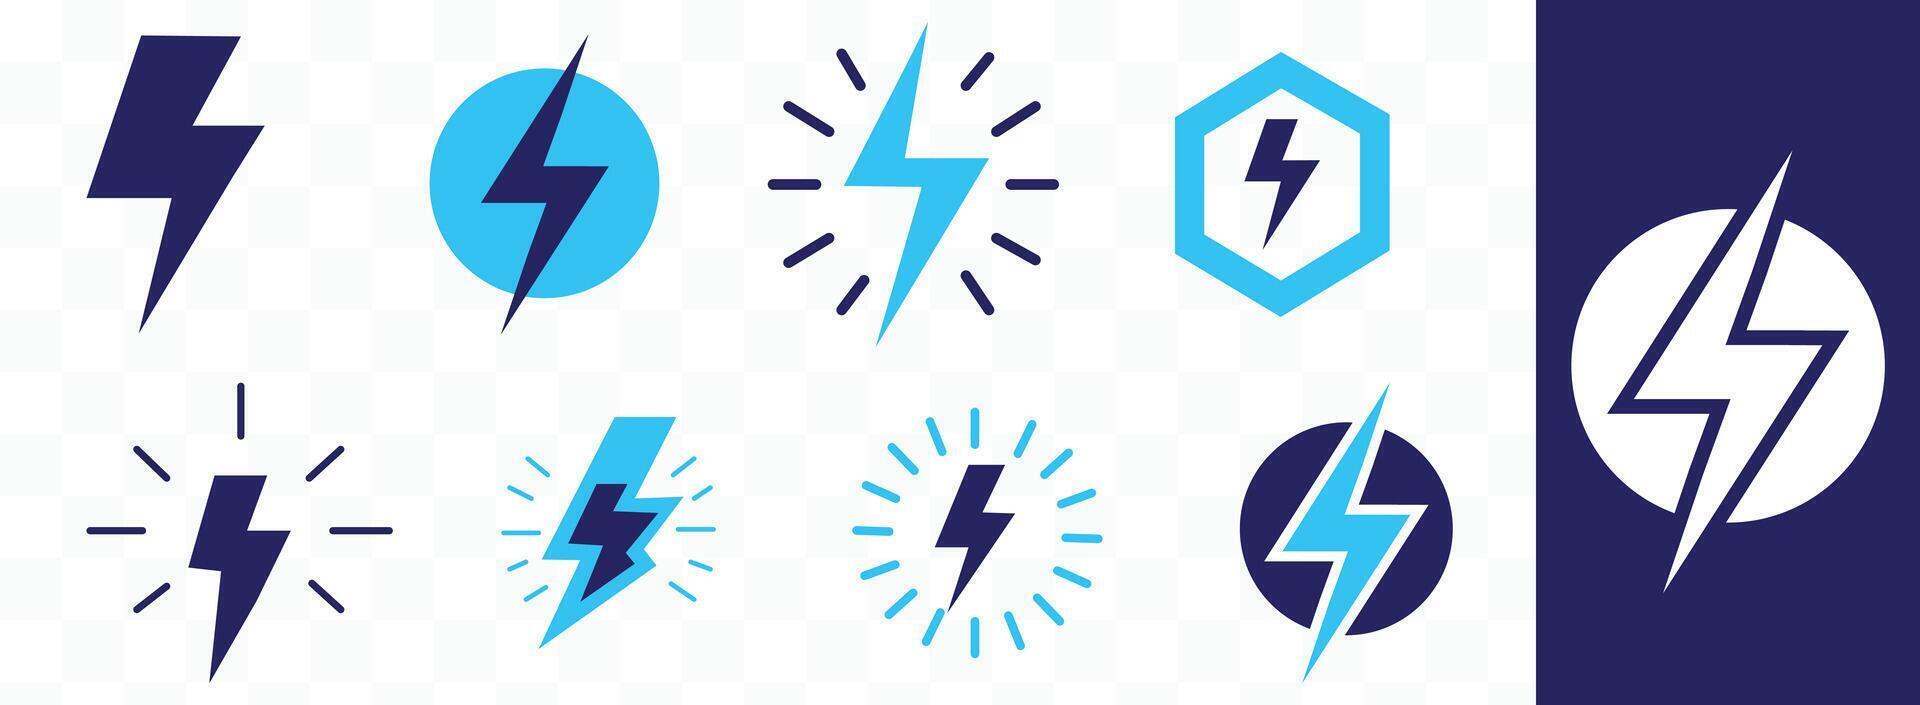 blixt- bult ikon uppsättning. blixt elektrisk symbol. blixt platt stil tecken, vektor illustration.